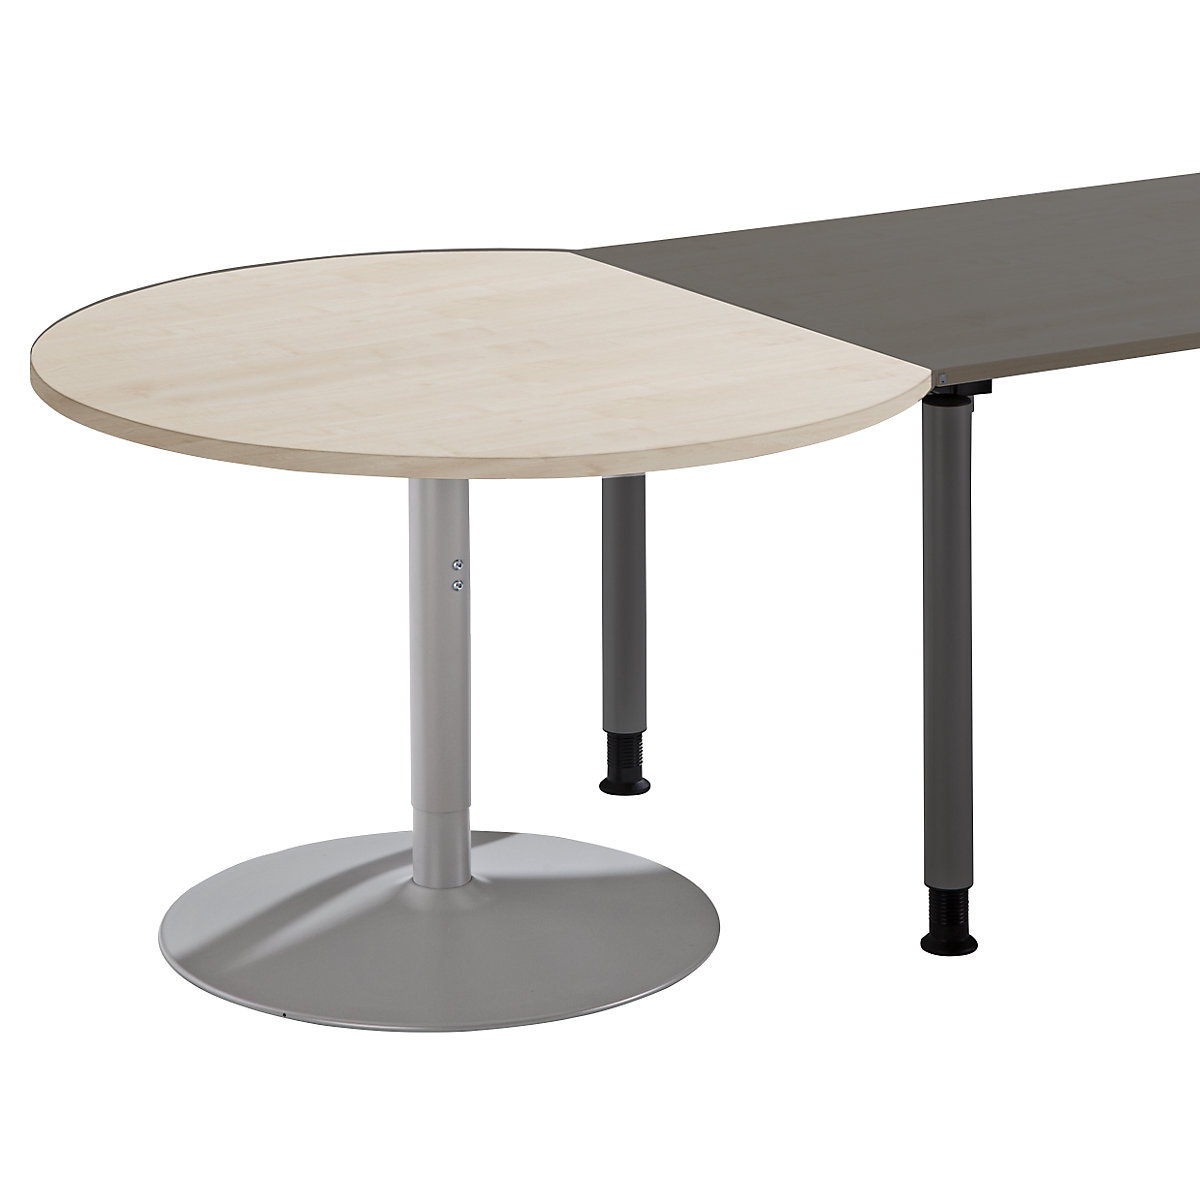 Dogradni stol THEA, s tanjurastom nogom, imitacija javora-4